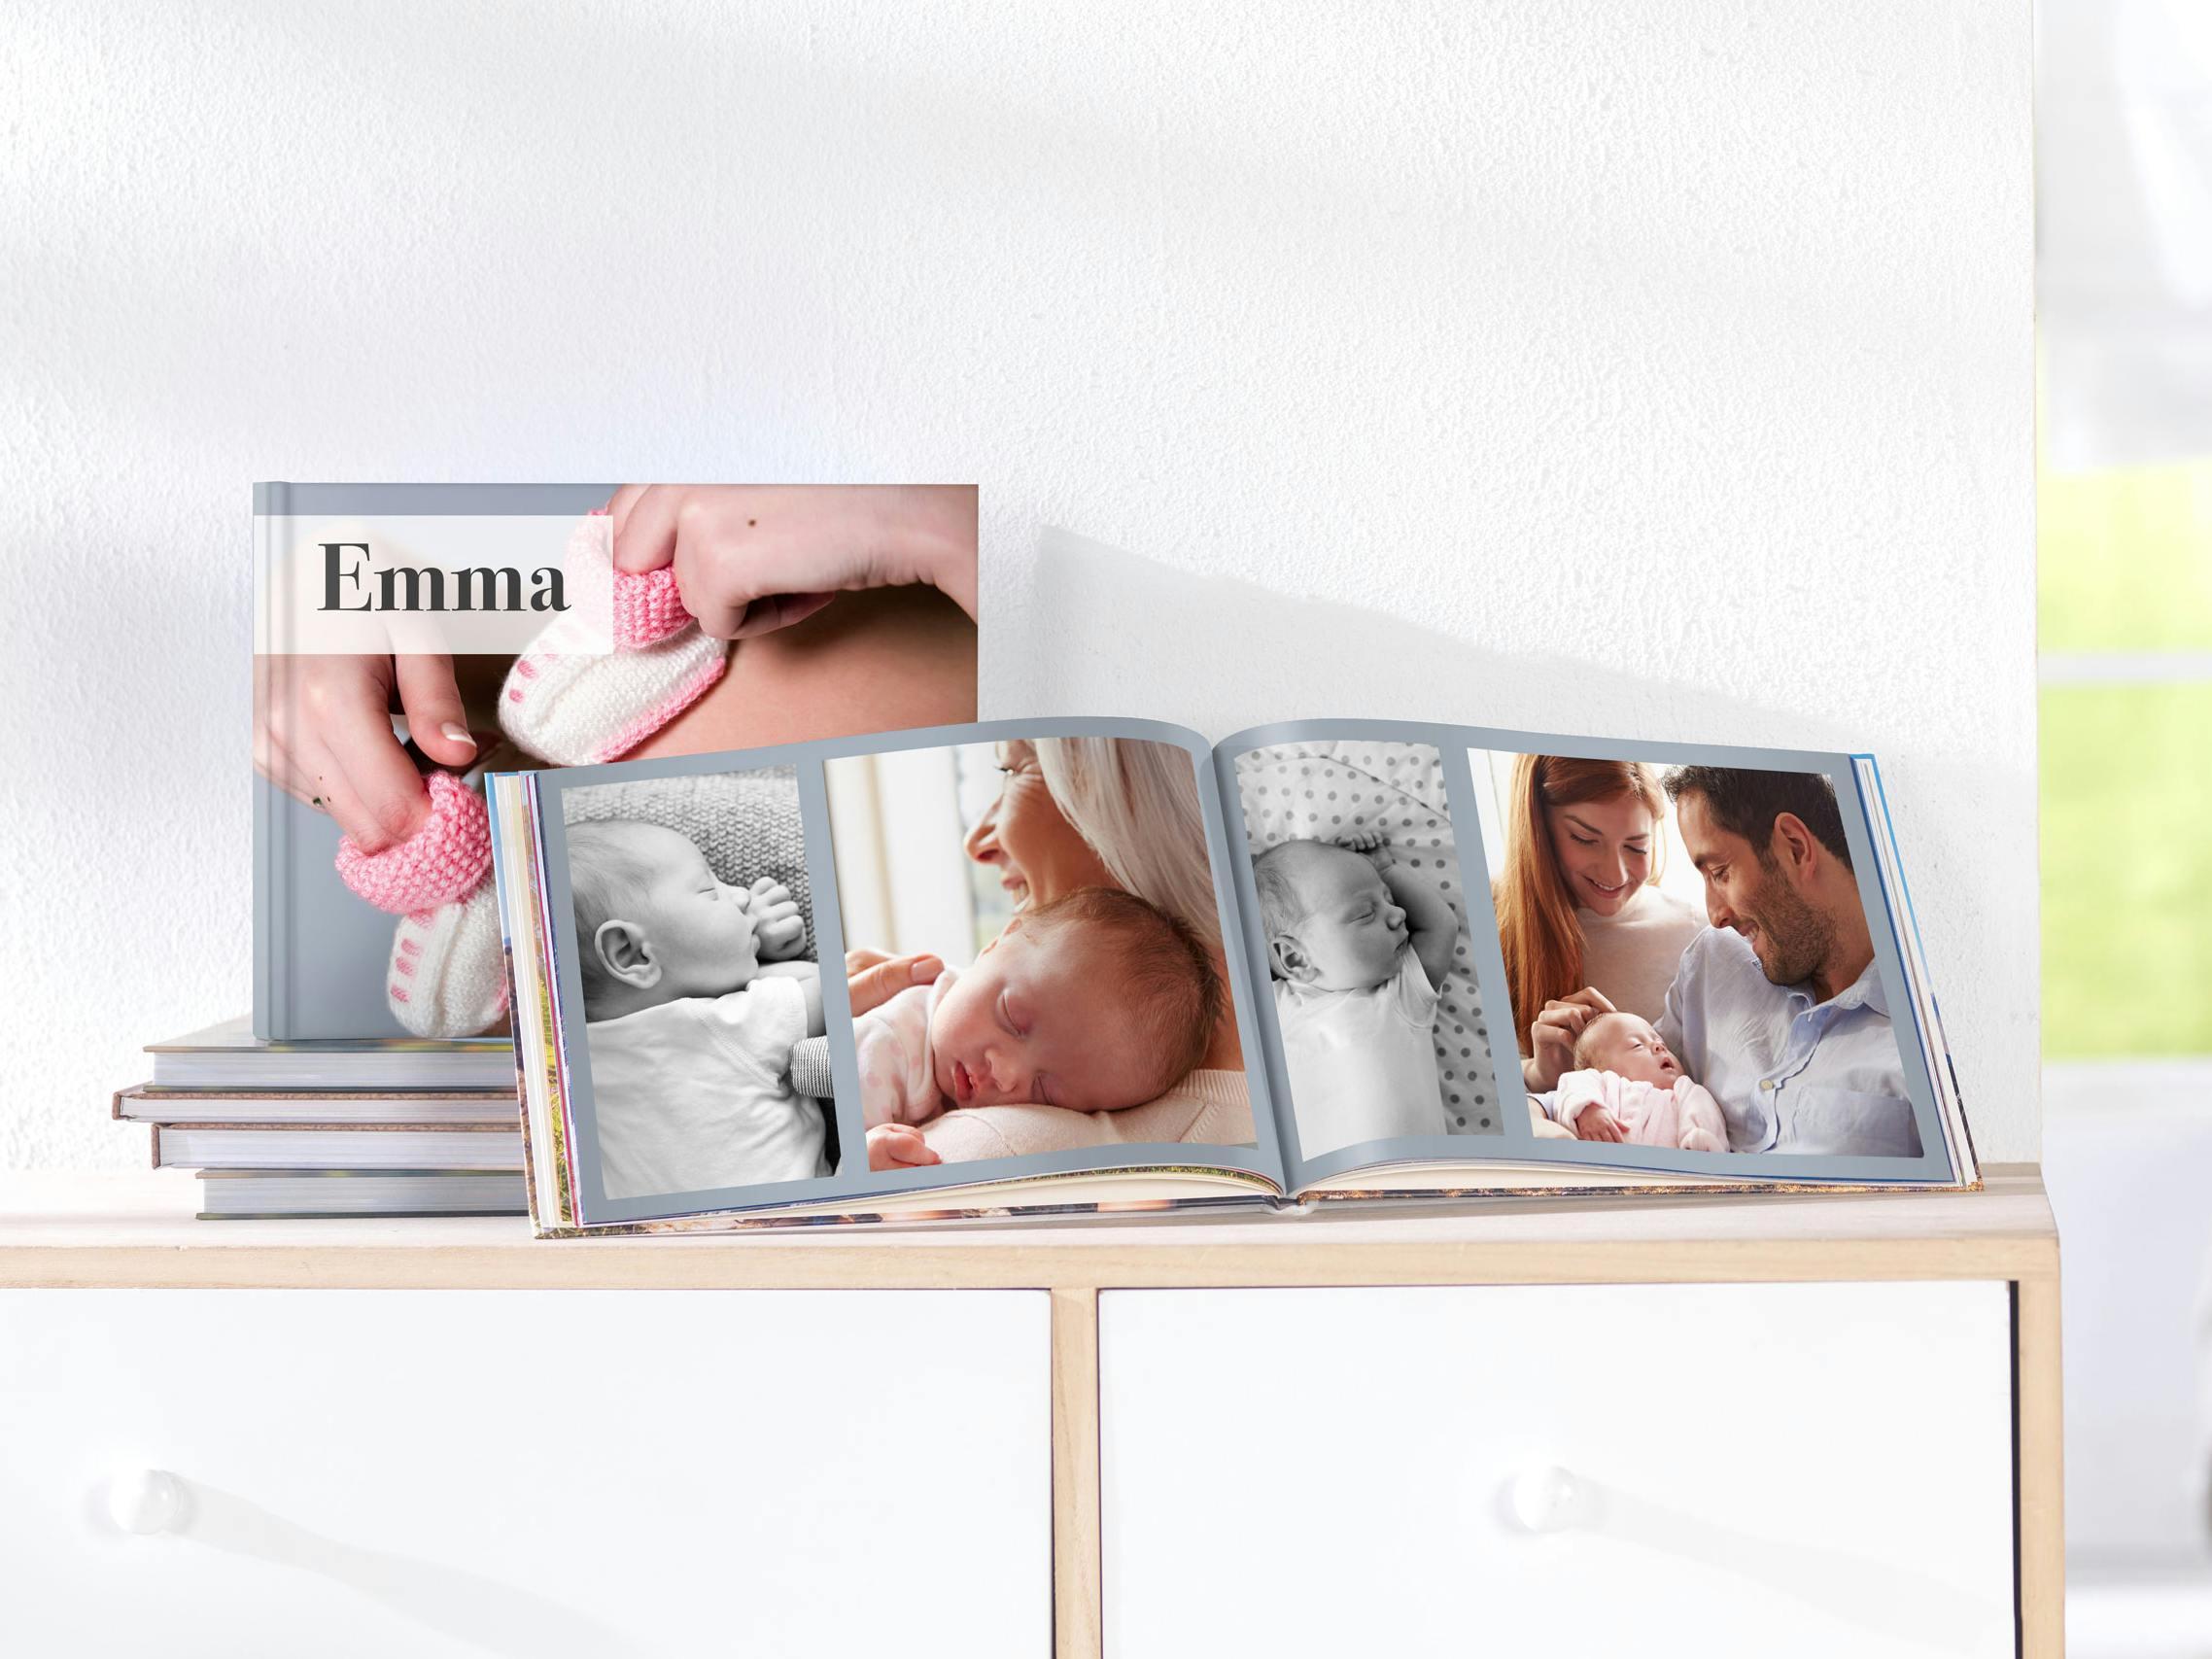 Fotobuch quadratisch mit Babymotiv als Hardcover und dem Namen "Emma" im Ambiente